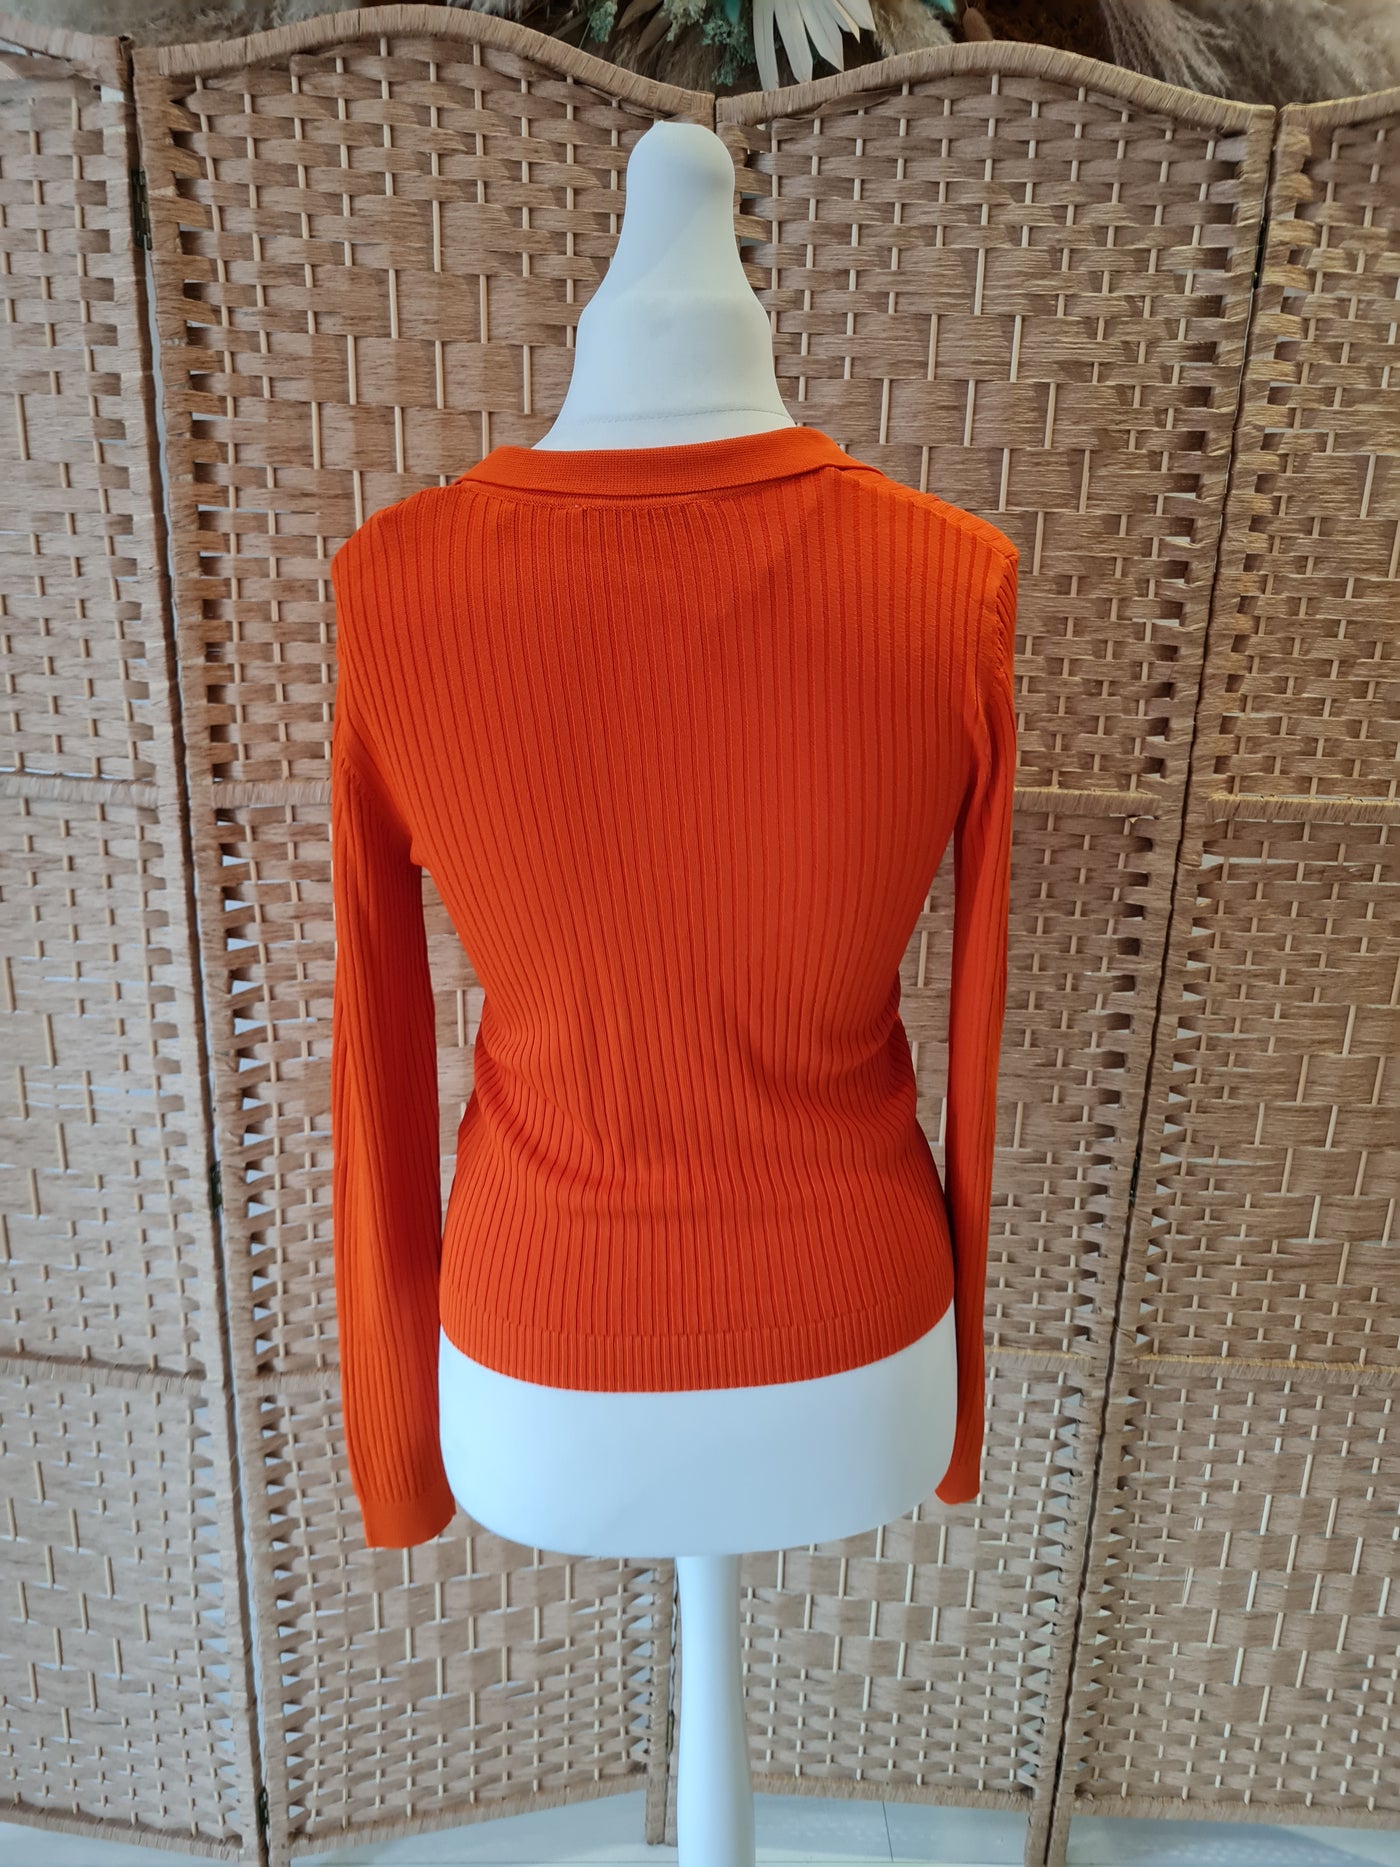 Zara Orange Knit Size Medium New